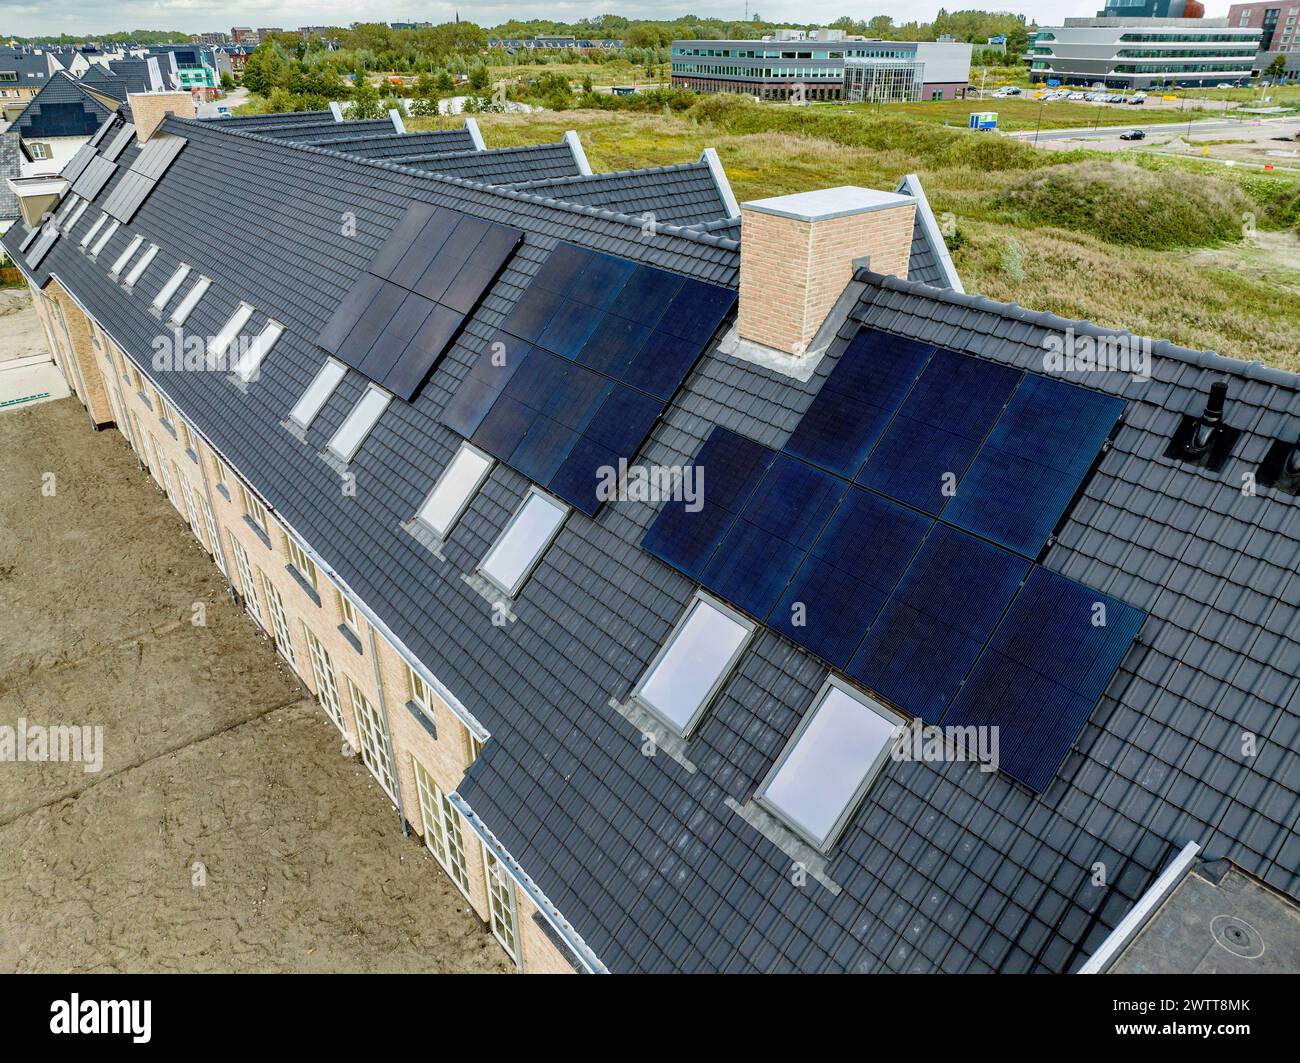 Ein Vogelblick auf Solarpaneele auf dem Dach eines Wohnhauses Stockfoto